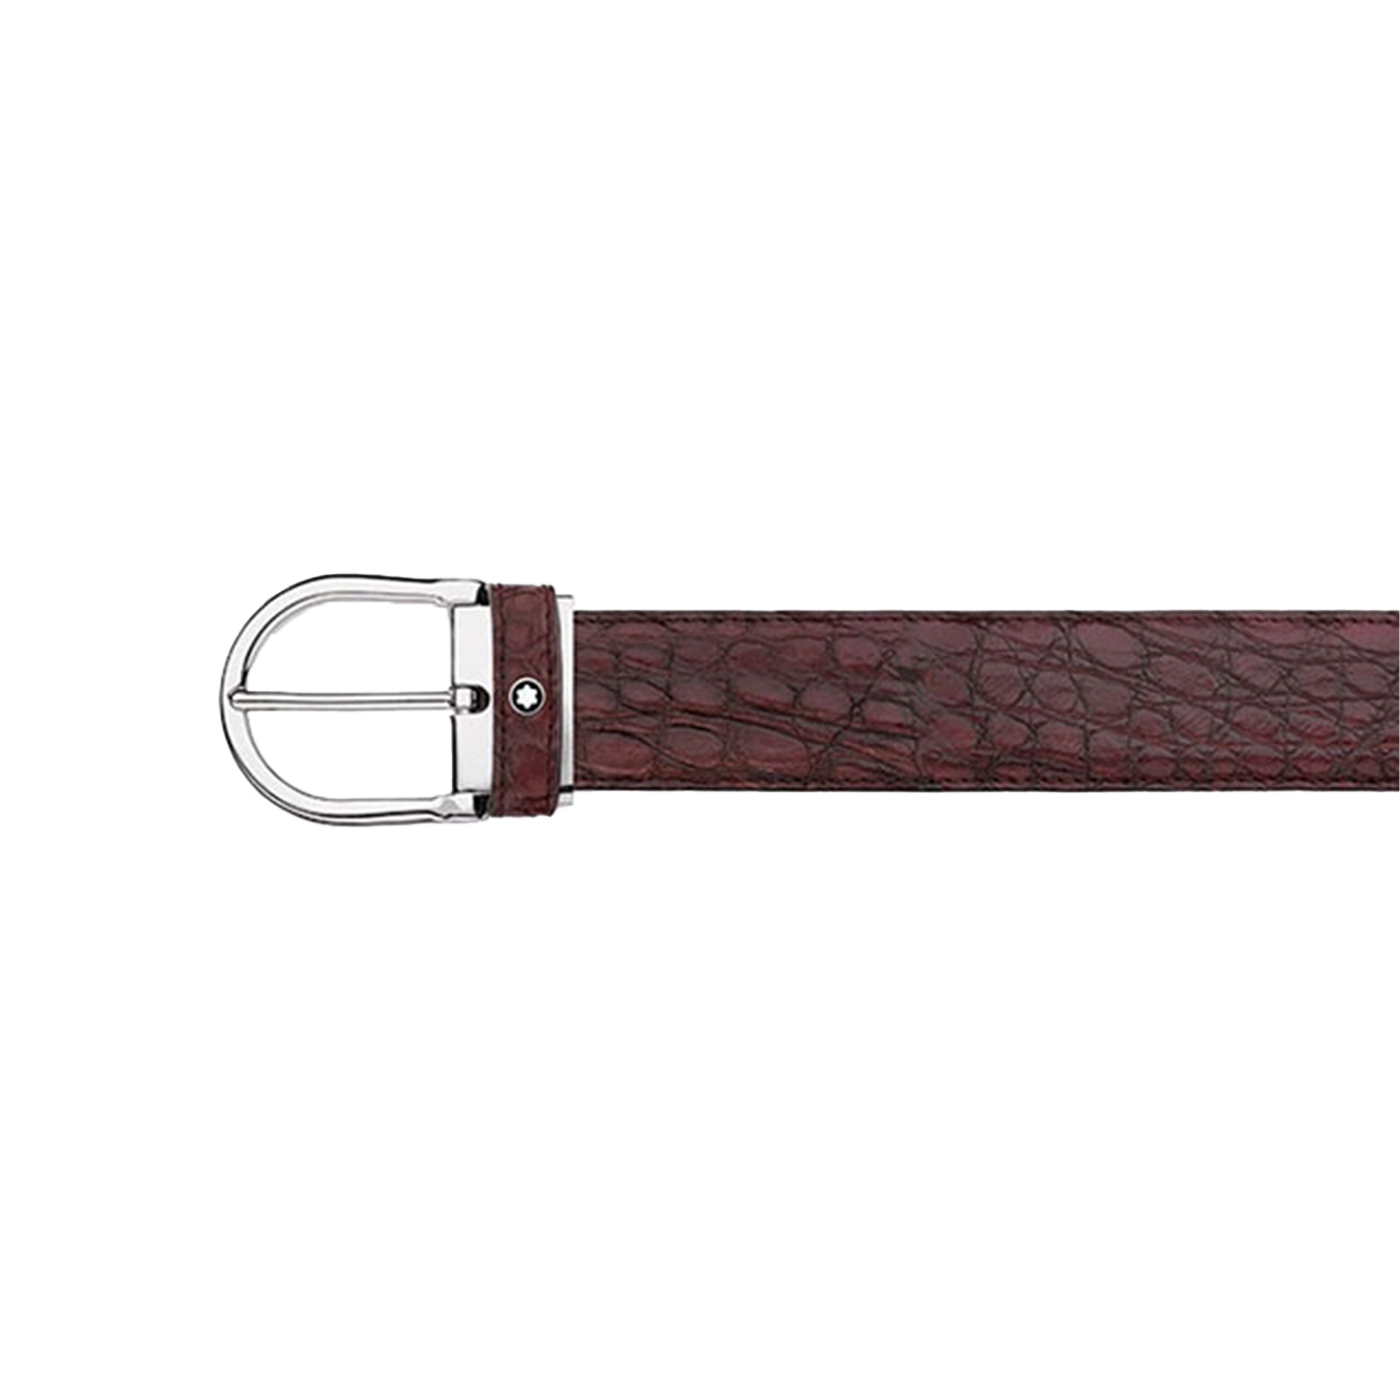 Cinturón Montblanc Piel color burdeos | Bo&Co